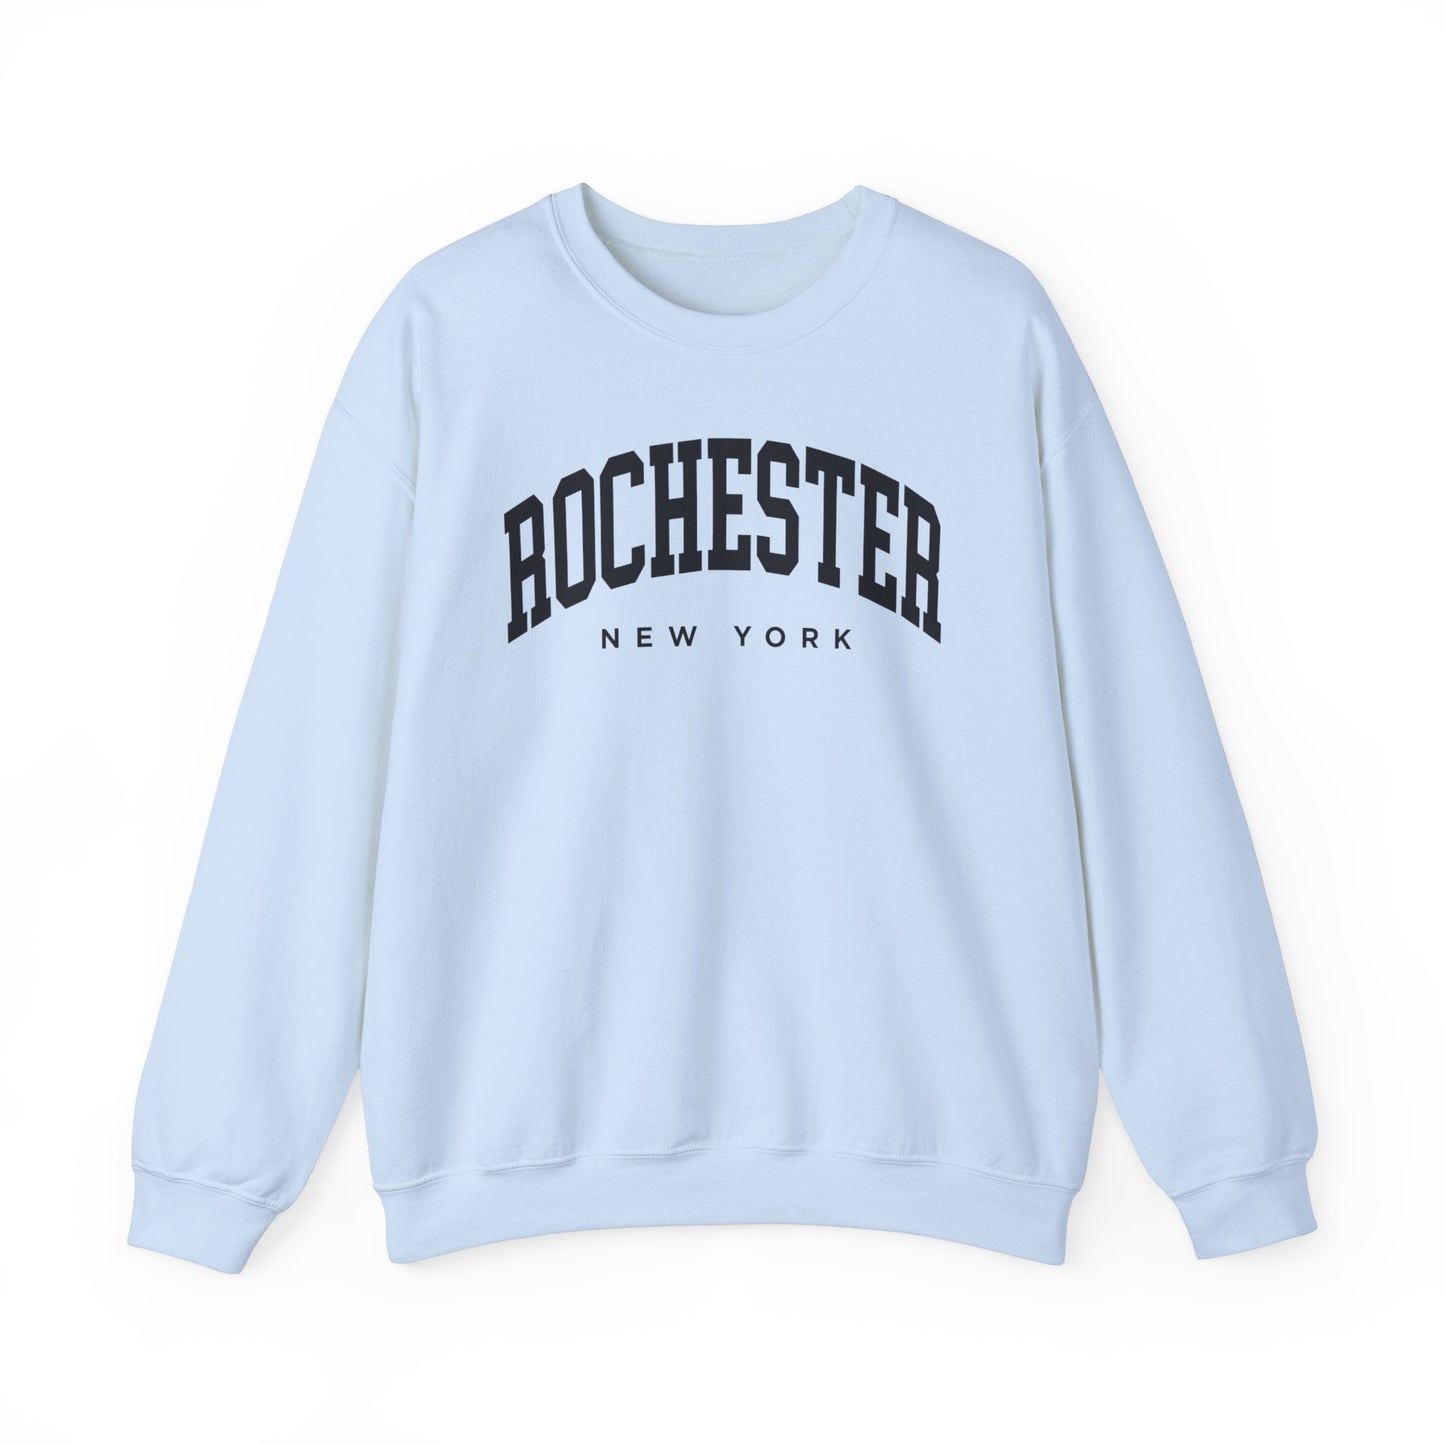 Rochester New York Sweatshirt